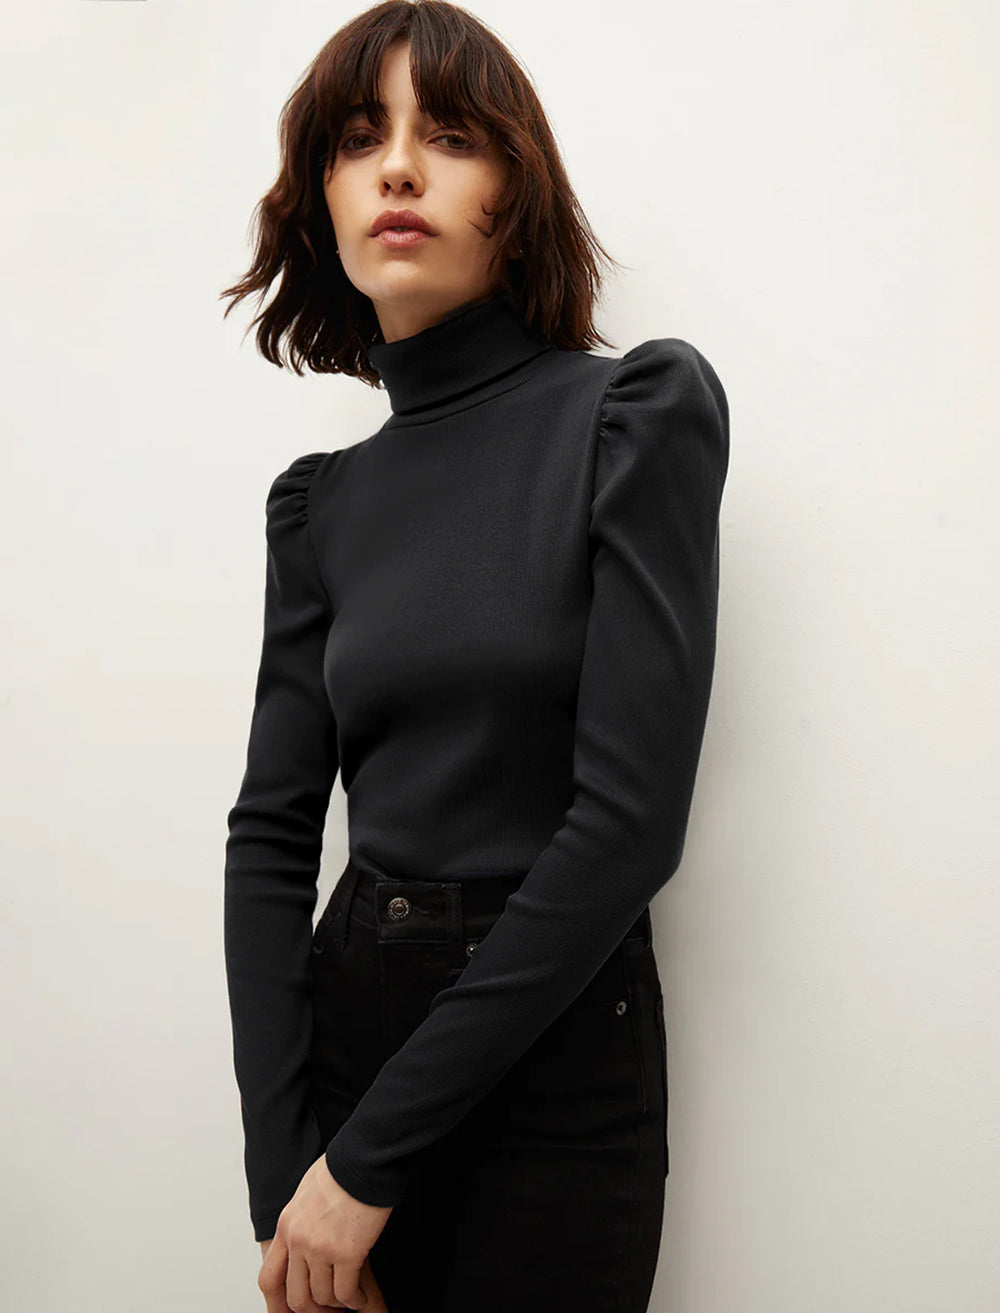 Model wearing Veronica Beard's cedar turtleneck in solid black.